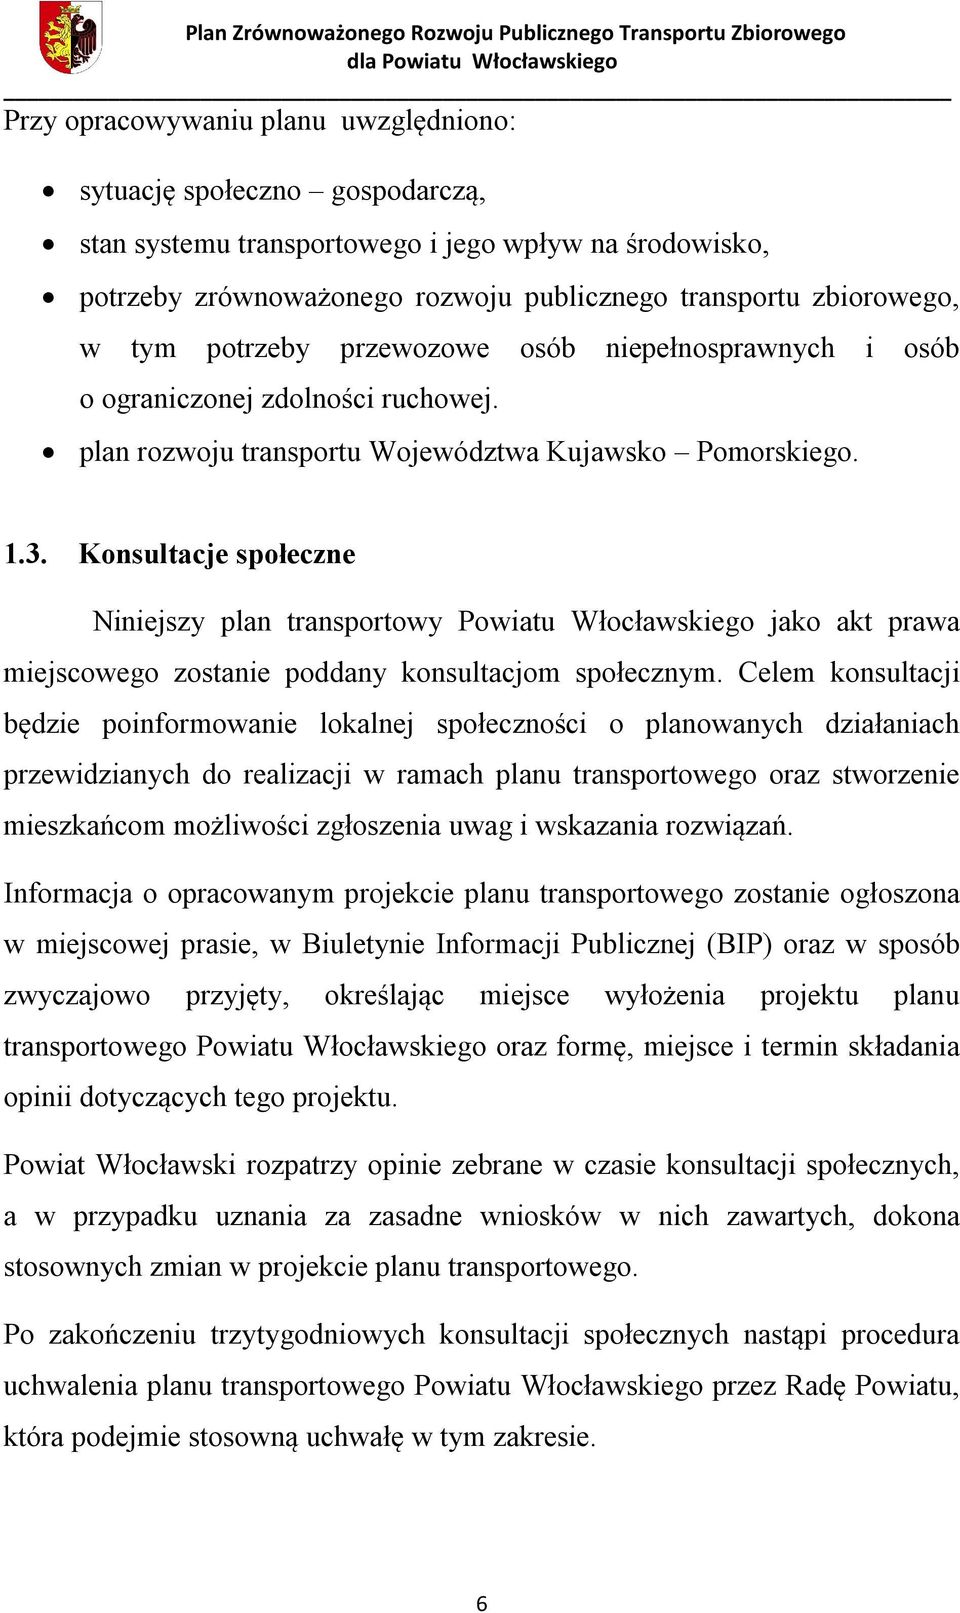 Konsultacje społeczne Niniejszy plan transportowy Powiatu Włocławskiego jako akt prawa miejscowego zostanie poddany konsultacjom społecznym.